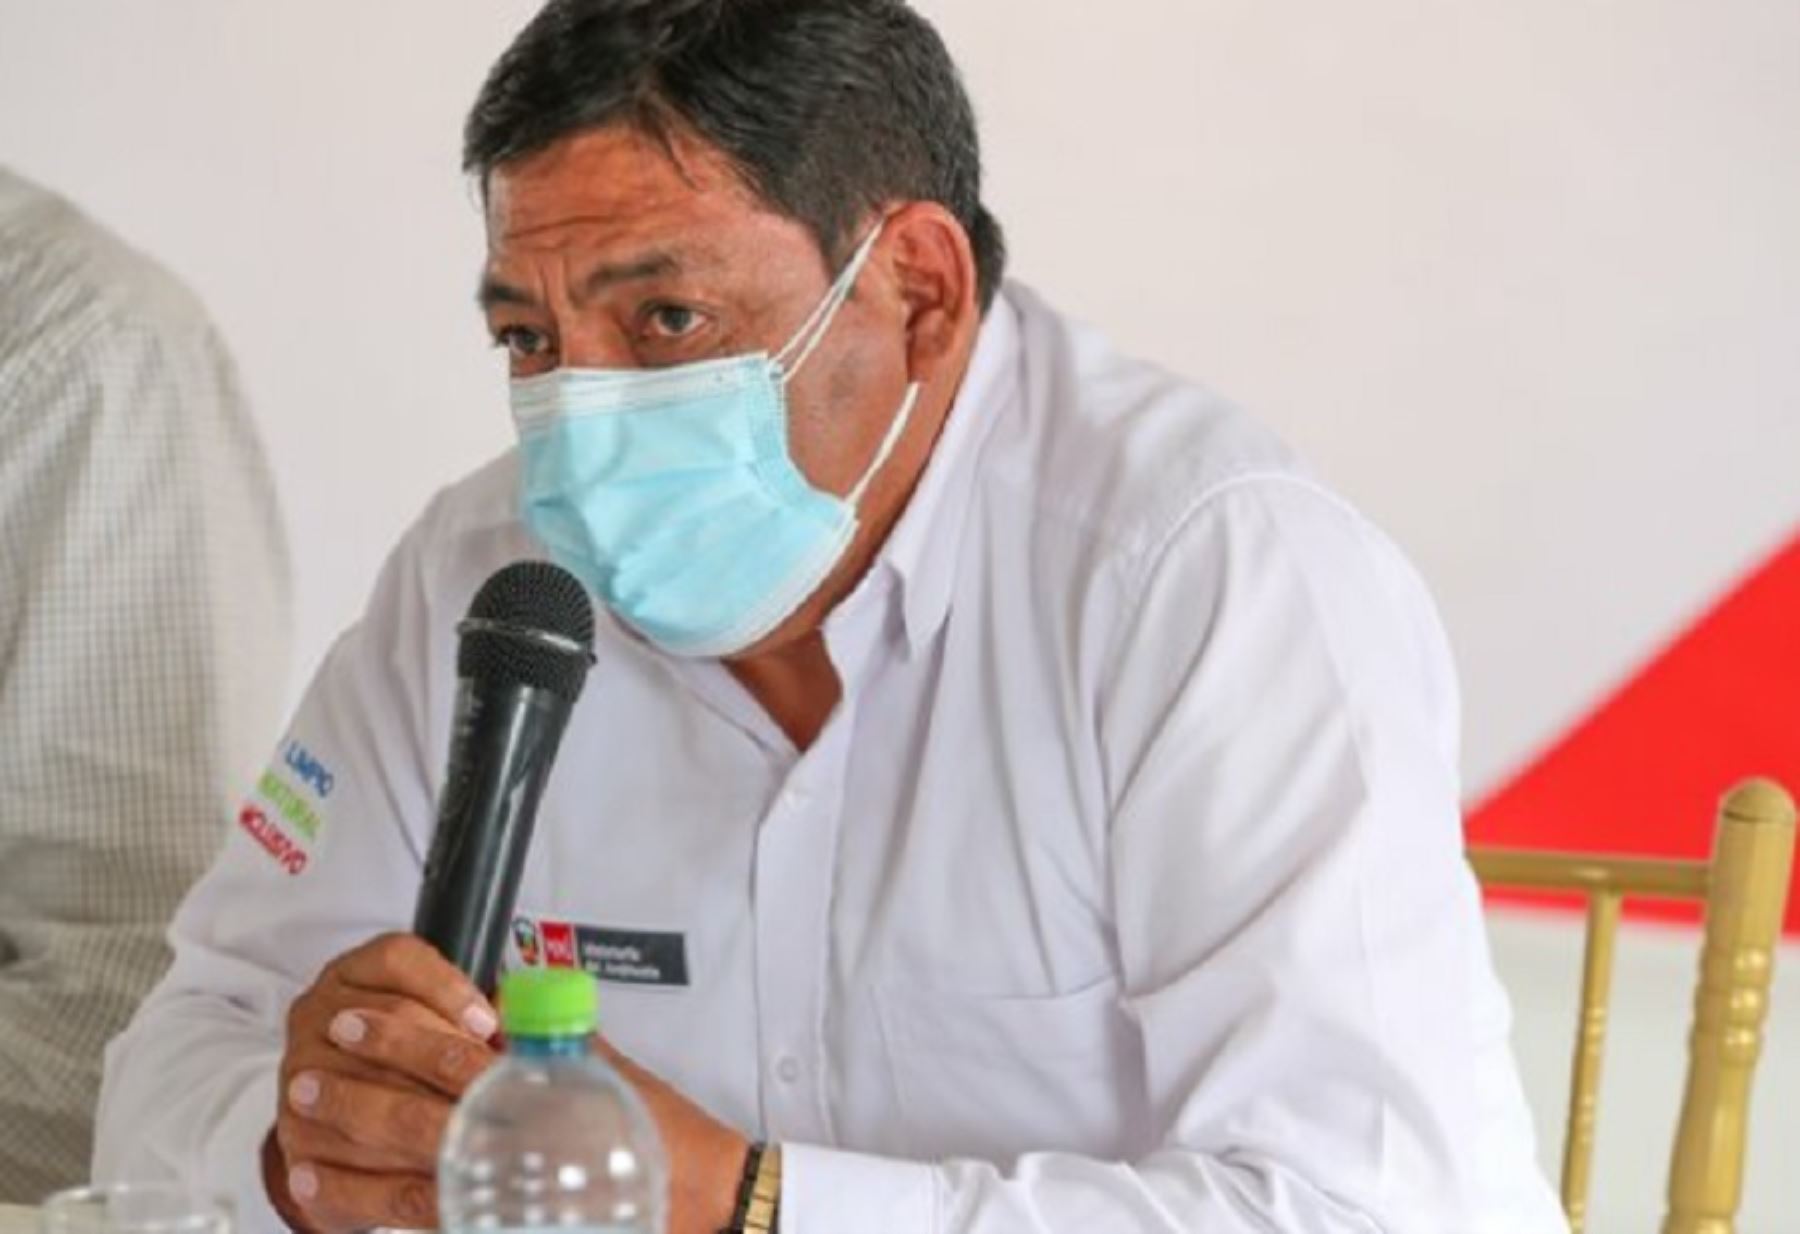 El ministro del Ambiente, Rubén Ramírez, manifestó que su sector se encuentra comprometido con las acciones en favor la adecuada gestión y manejo de residuos sólidos, la protección de los recursos naturales y el fortalecimiento de la educación ambiental en la región Moquegua y a nivel nacional.